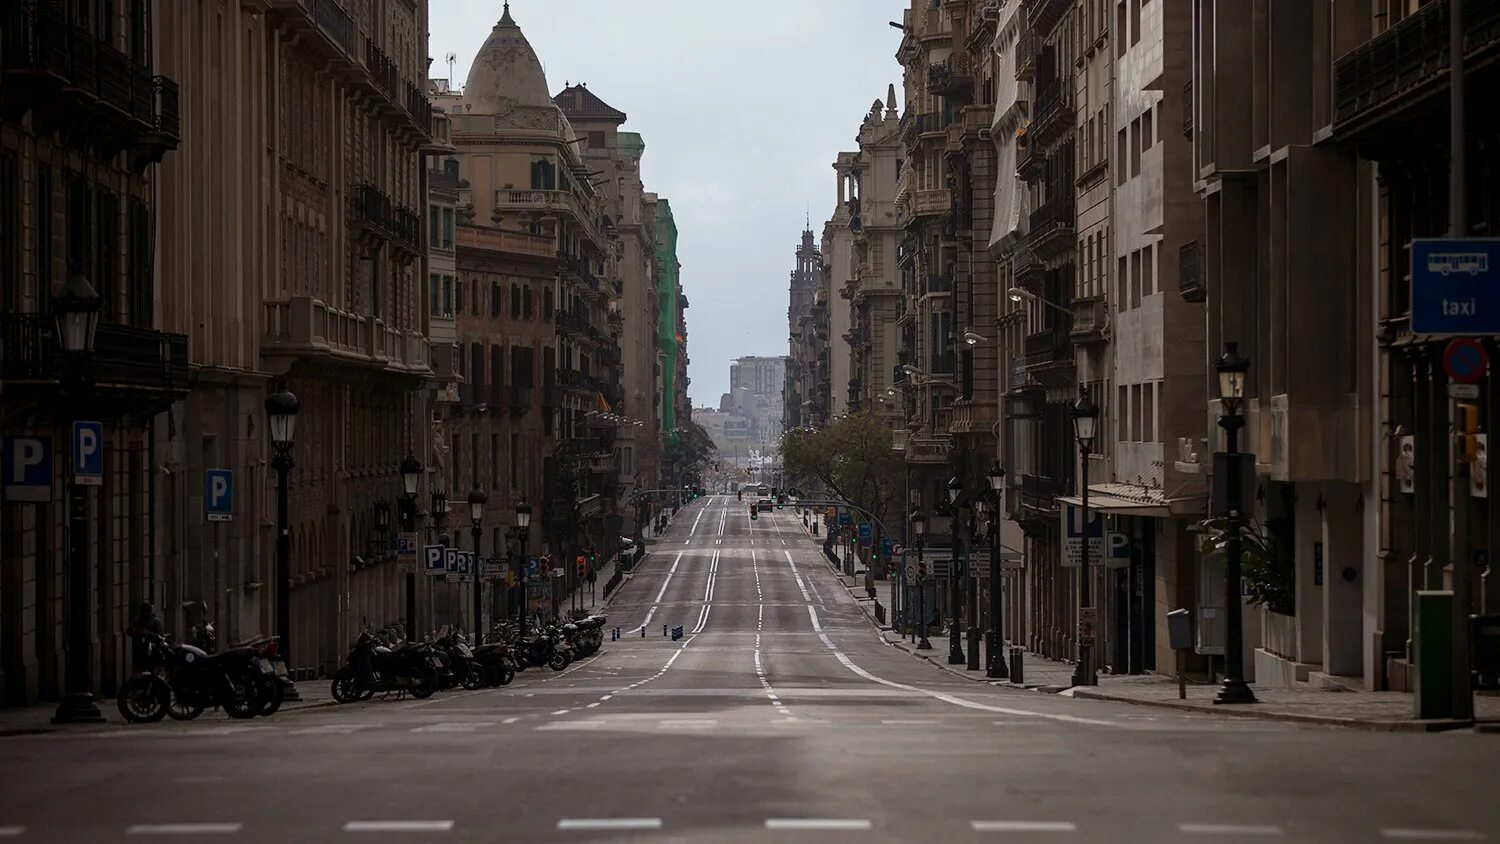 Ленья город. Улица Лайетана Барселона. Барселона Испания неубранные улицы. Ulica Hyusisayin. Улица города.